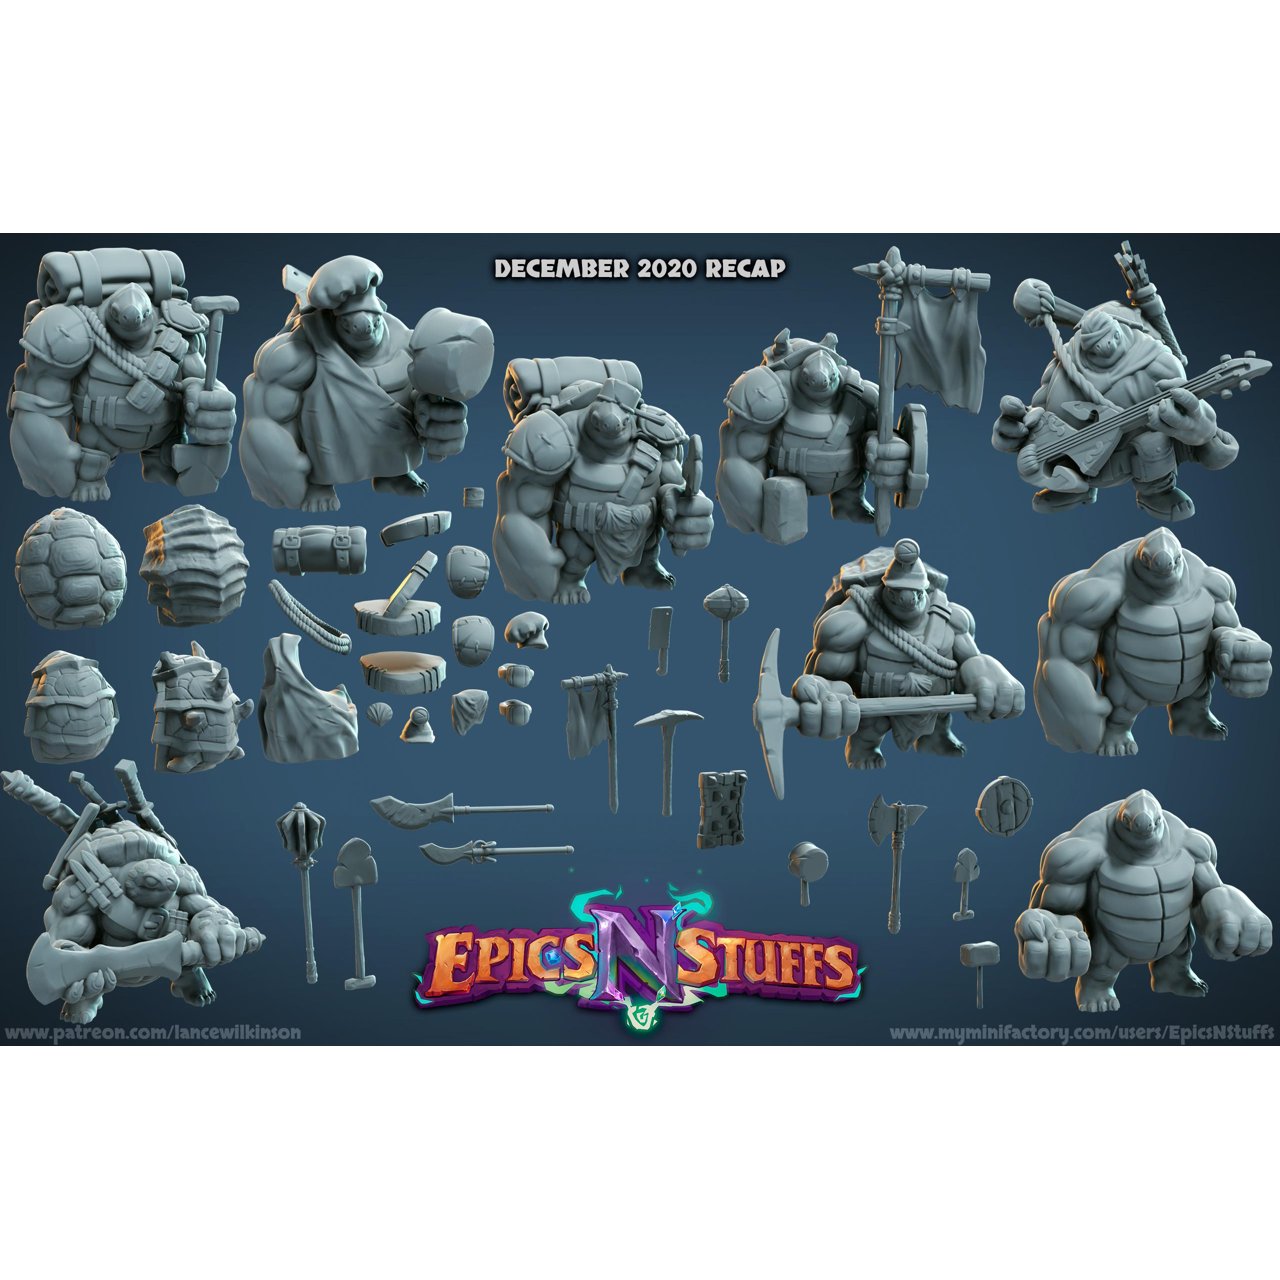 Epics 'N' Stuffs Miniatures December 2020 Epic N Stuffs Miniatures  MINISTL